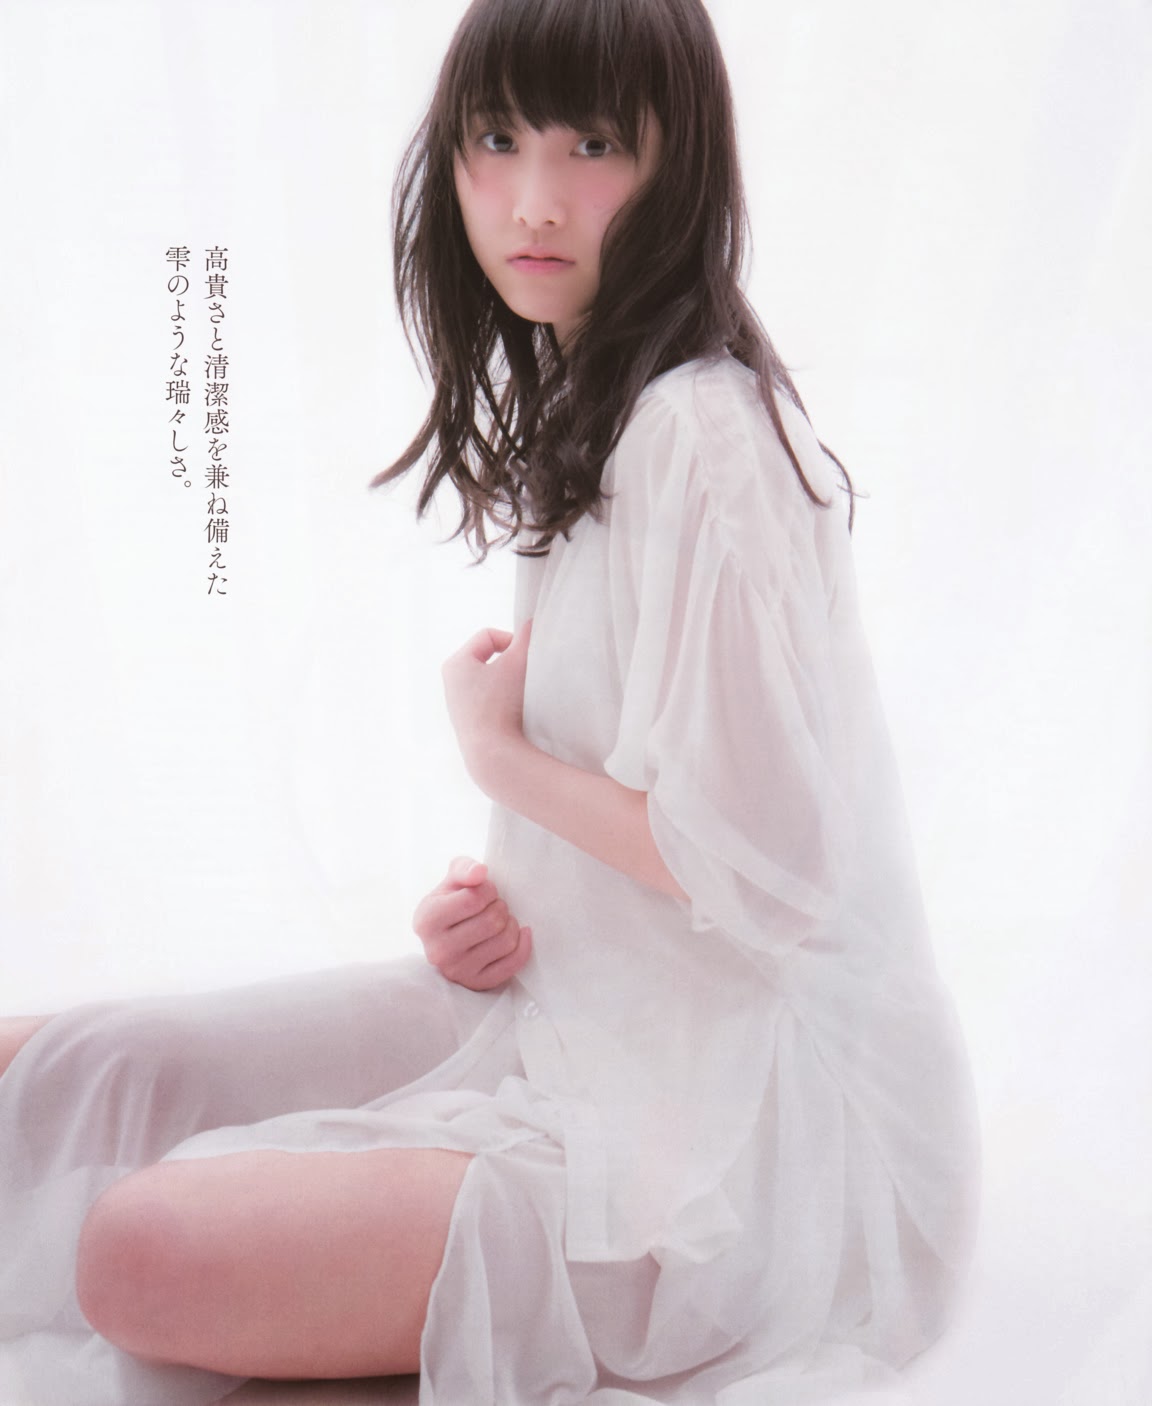 SKE48 Rena MatsuiCalla Lily on Bomb Magazine 004